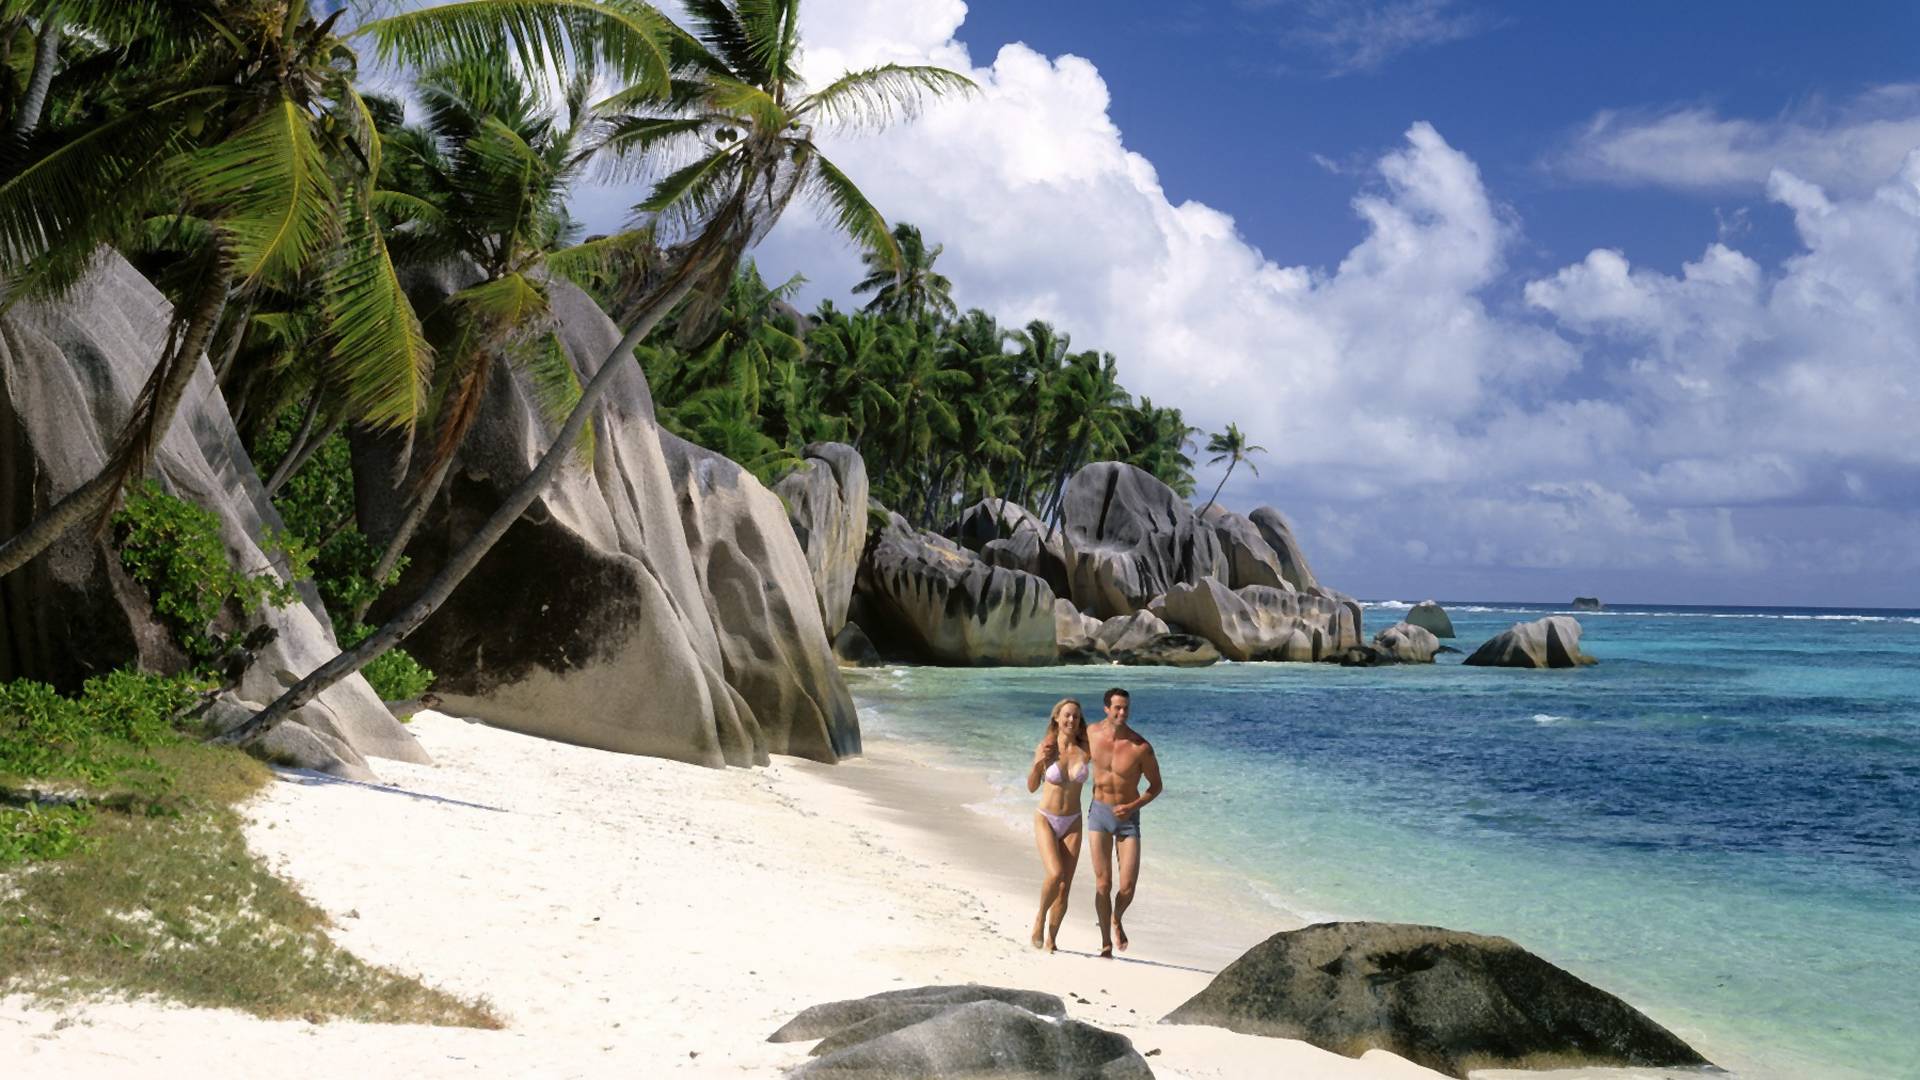 Mislili smo da raj ne postoji - a onda smo otkrili plažu koju Instagrameri obožavaju